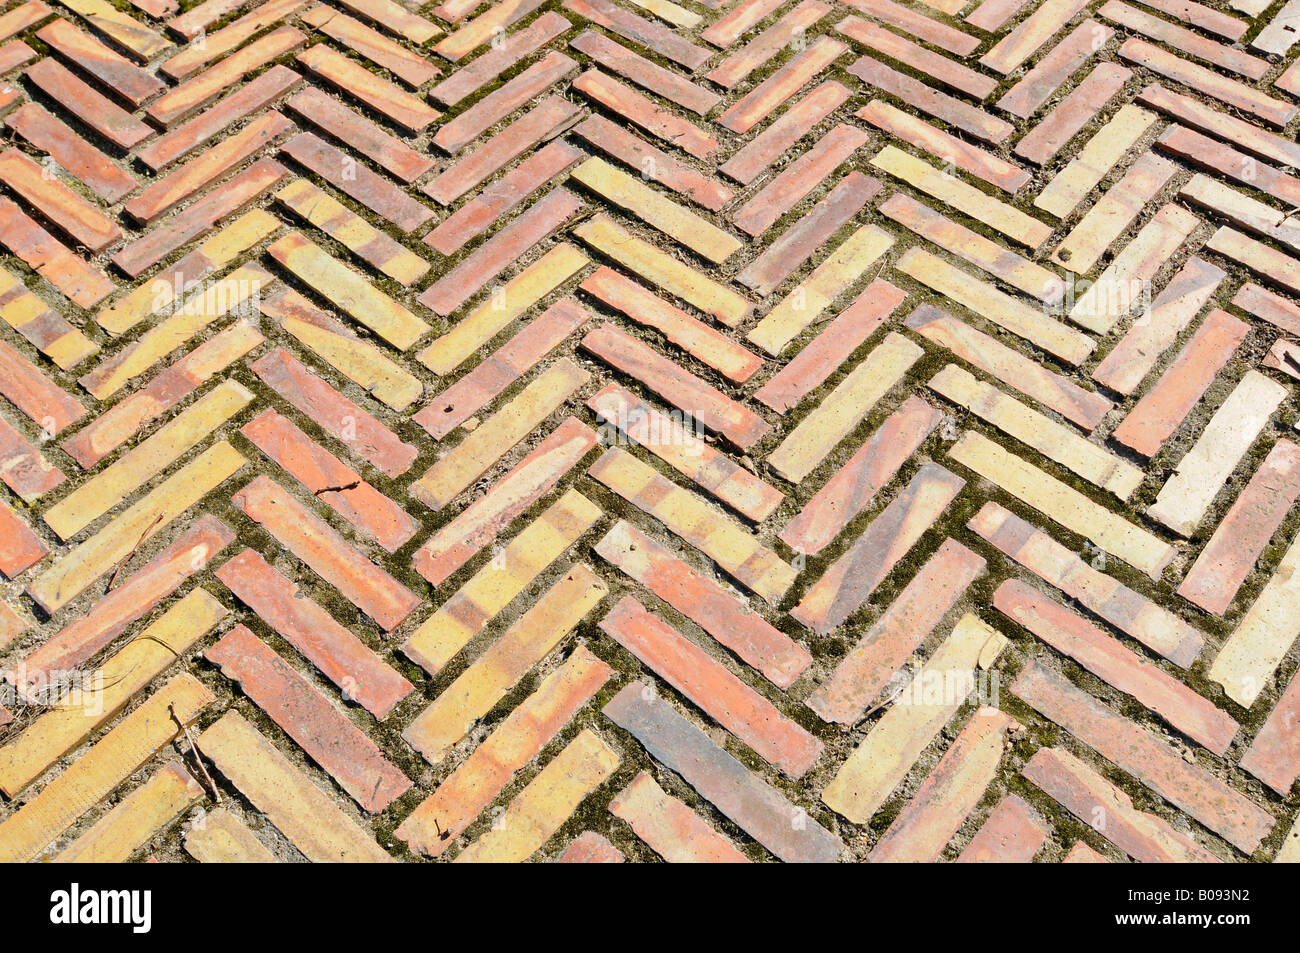 Antique tiles, flooring, Gata de Gorgos, Alicante, Costa Blanca, Spain Stock Photo